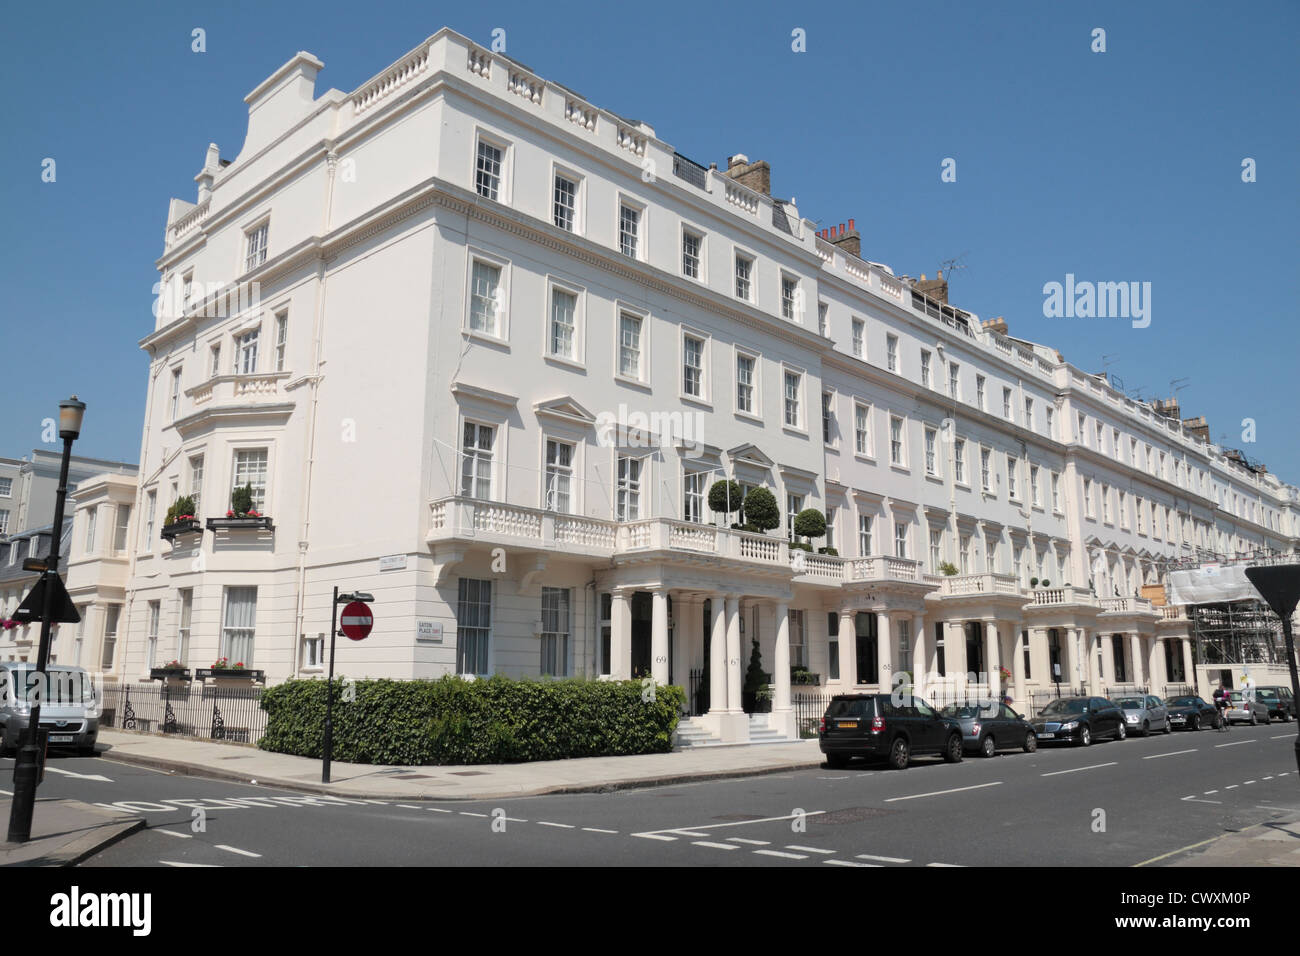 Blick auf die Kreuzung von Eaton Place und Lyall Street, Belgravia, City of Westminster, London, SW1, UK. Stockfoto